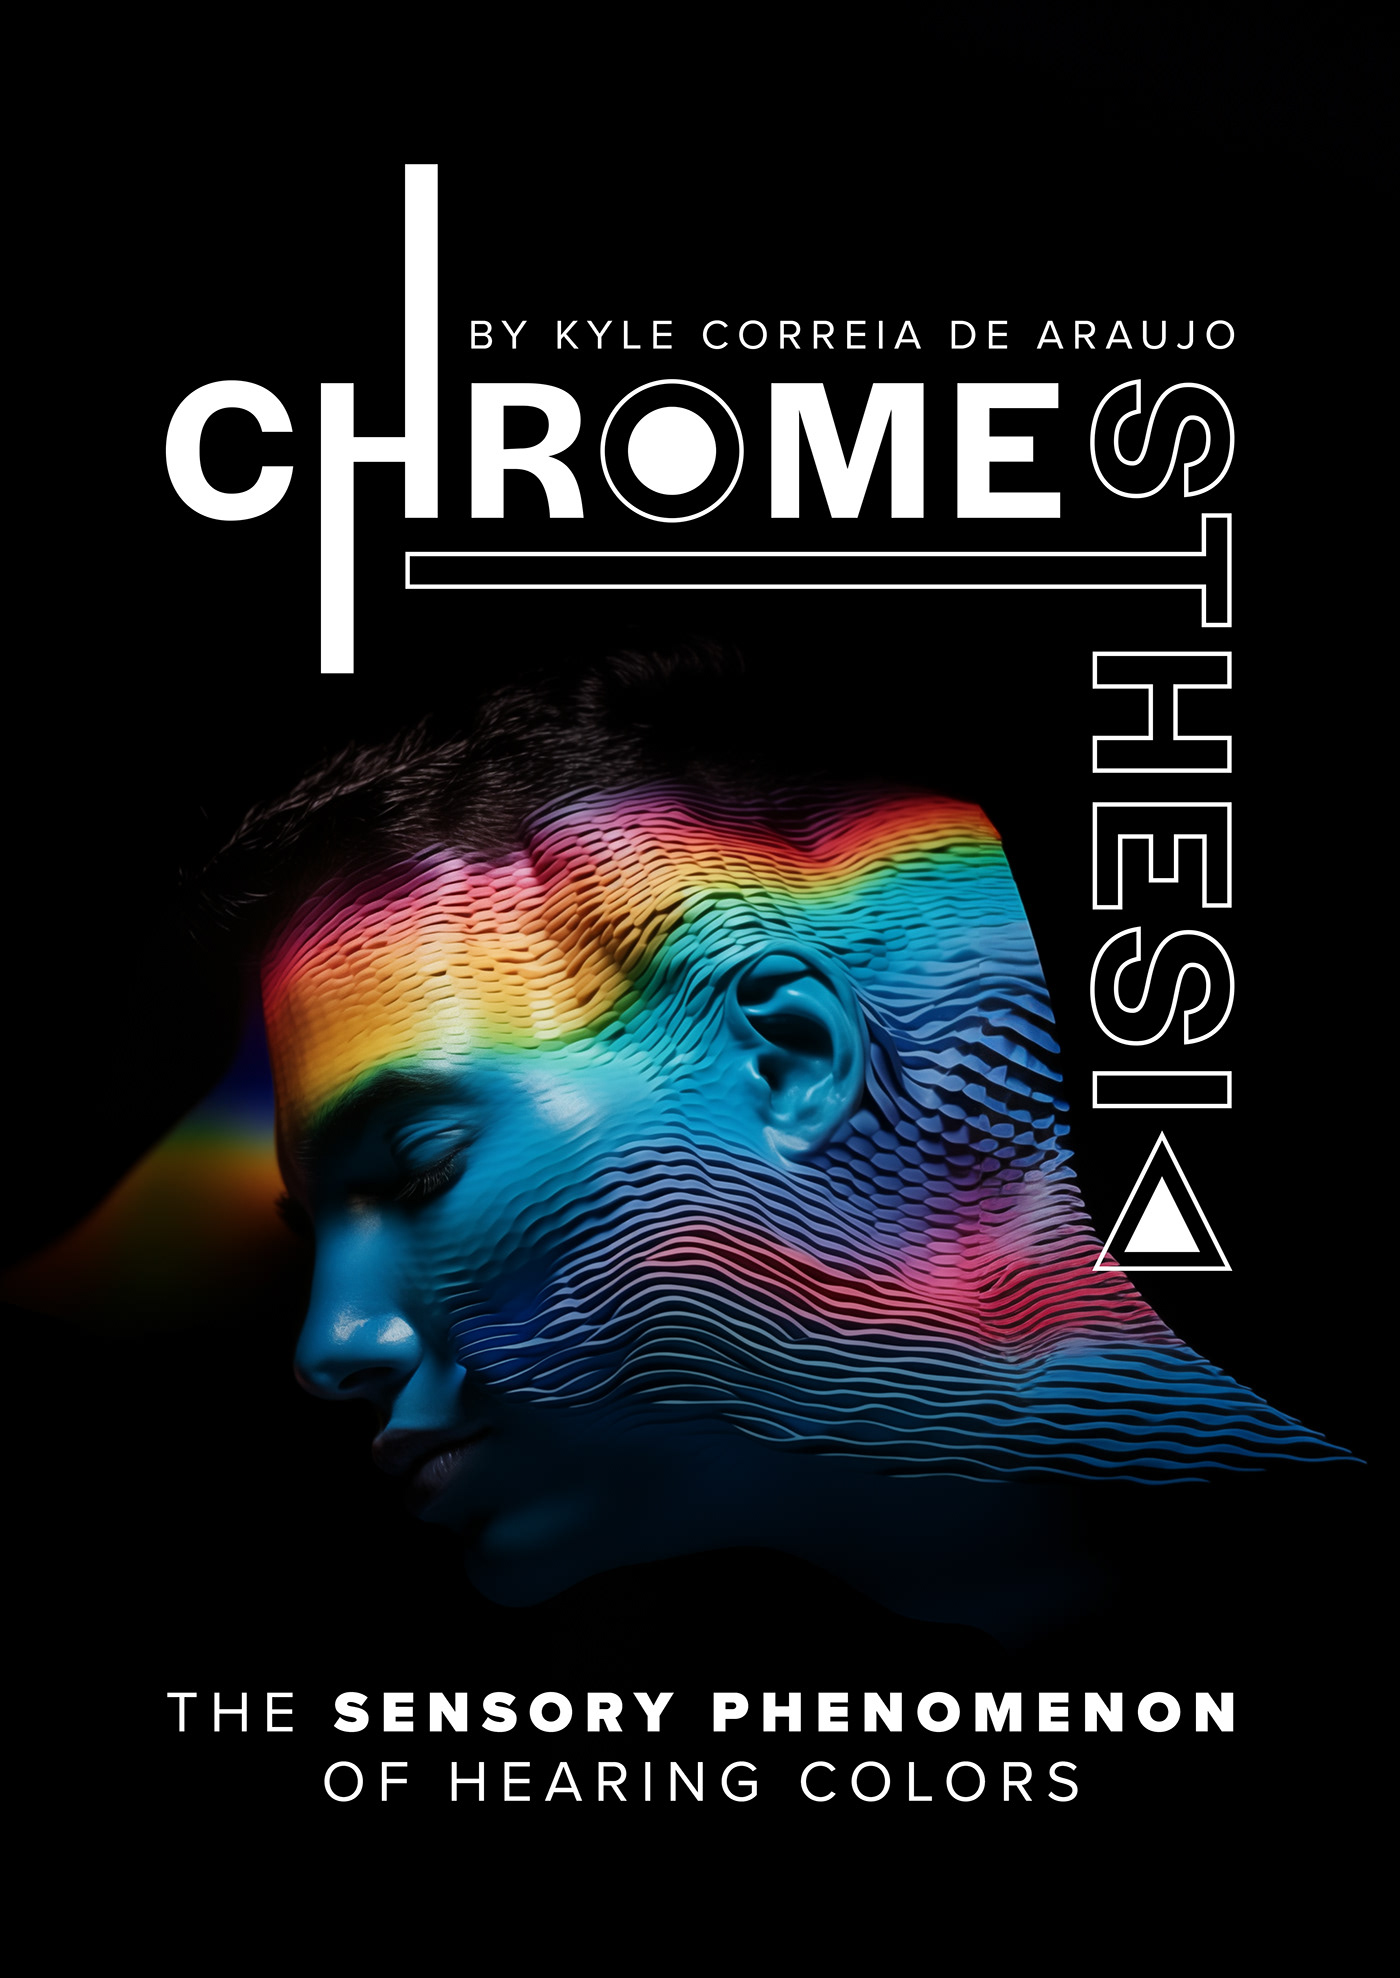 Chromesthesia synesthesia poster Advertising  Ai Art Kyle Correia De Araujo Colourful  typography   video art